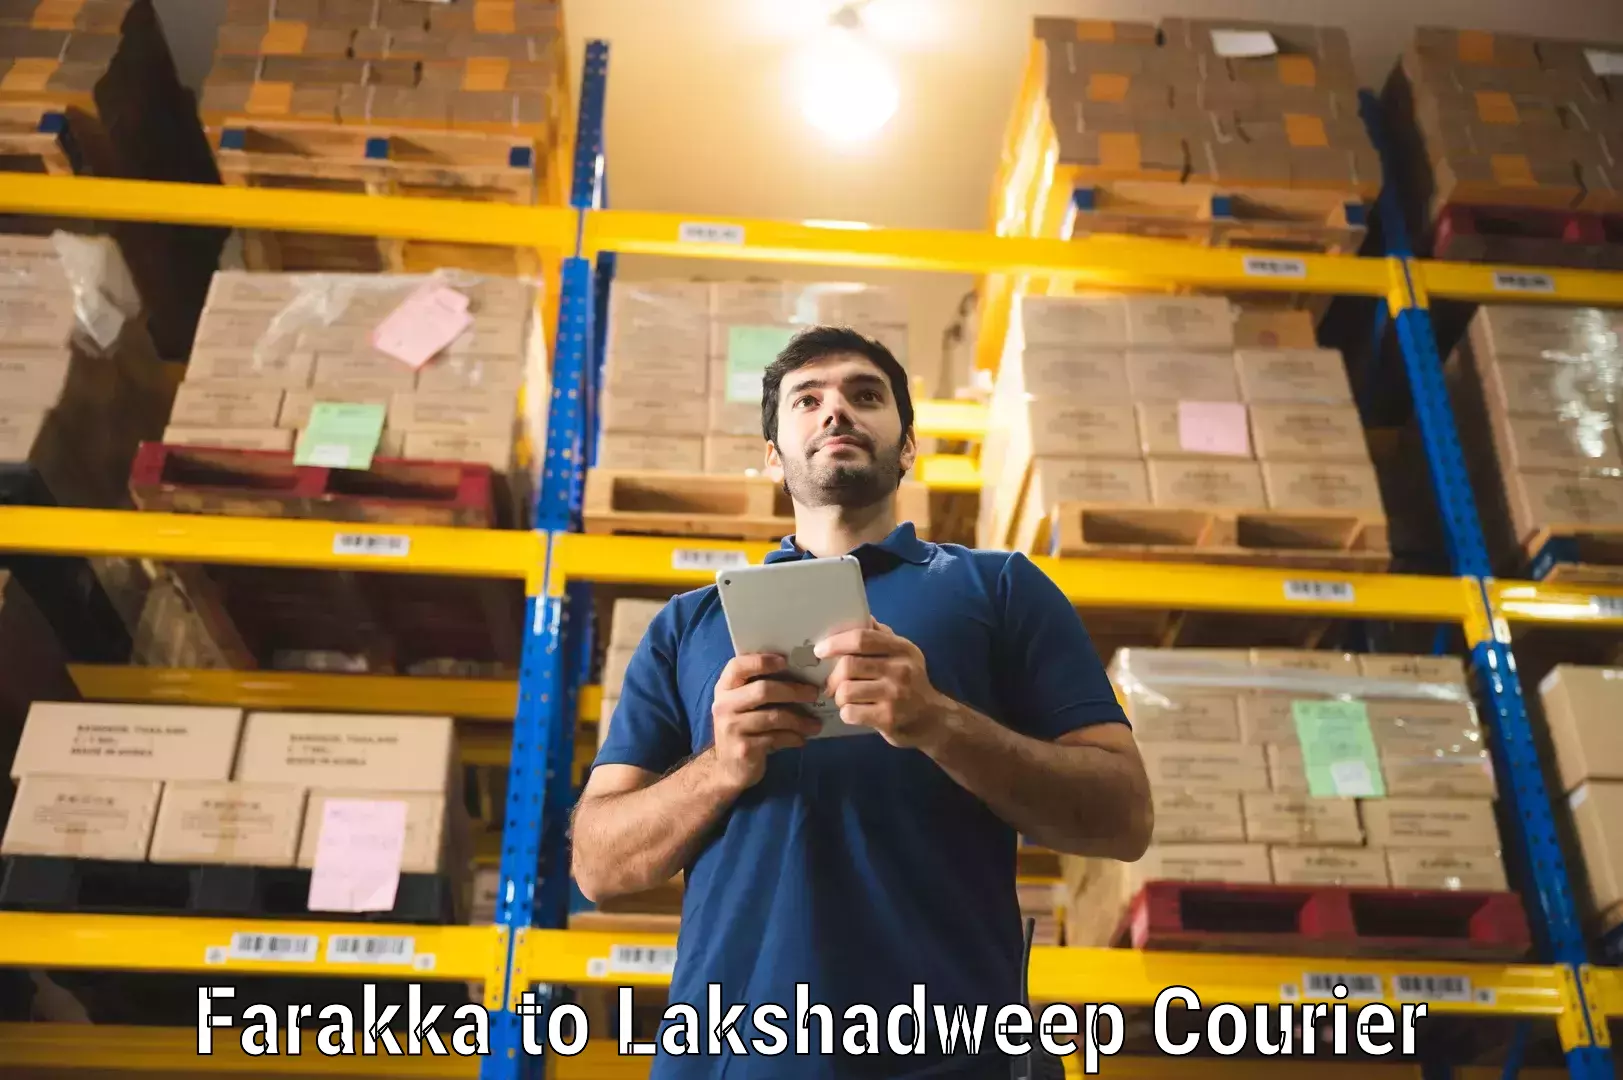 Express mail service Farakka to Lakshadweep